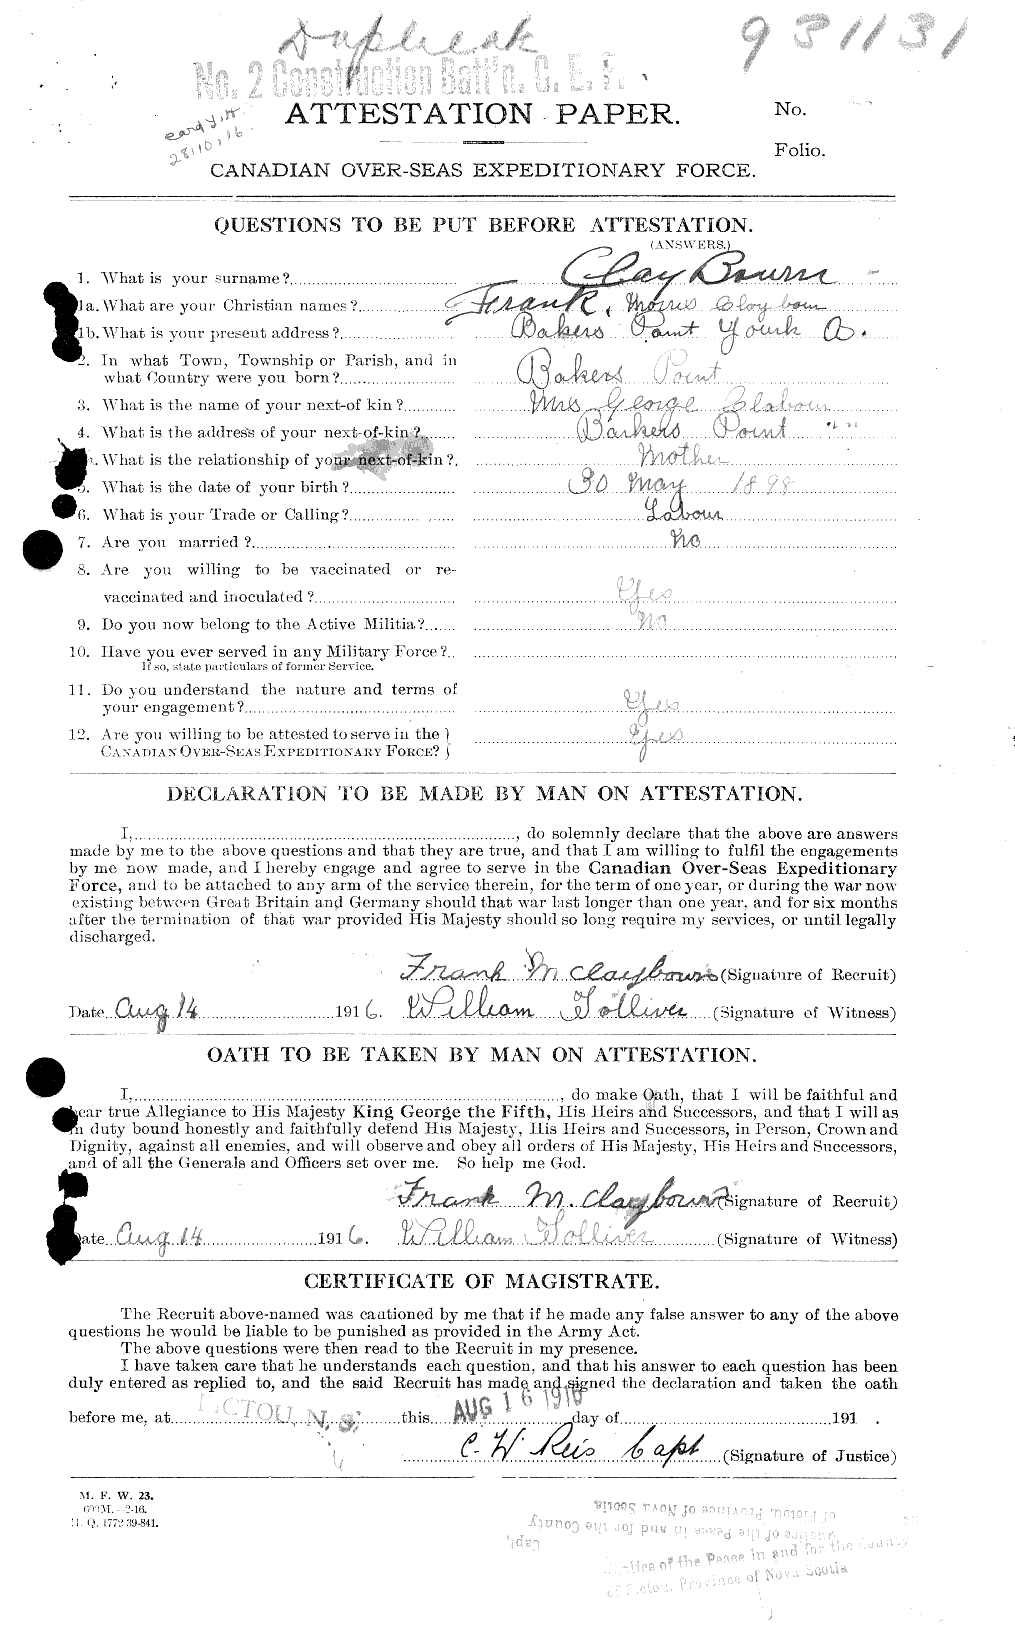 Dossiers du Personnel de la Première Guerre mondiale - CEC 019226a